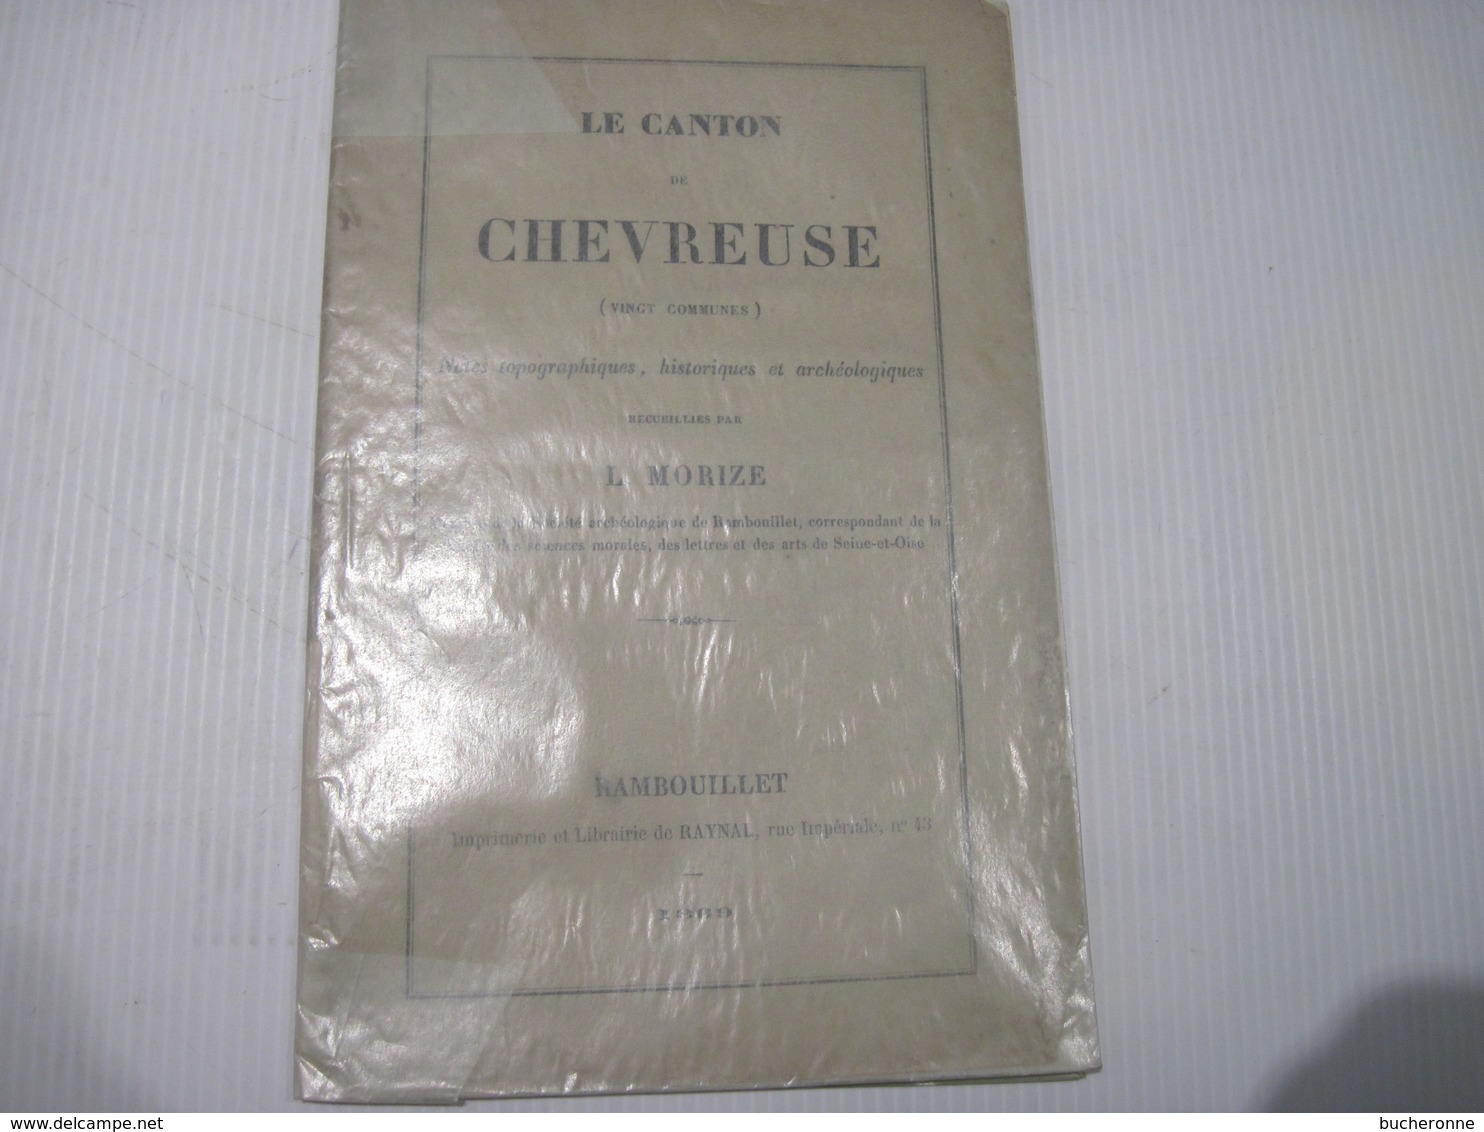 Le Canton De Chevreuse (vingt Communes): Notes Topographiques, Historiques Et Archéologiques (1869) 32 Pages - Historical Documents